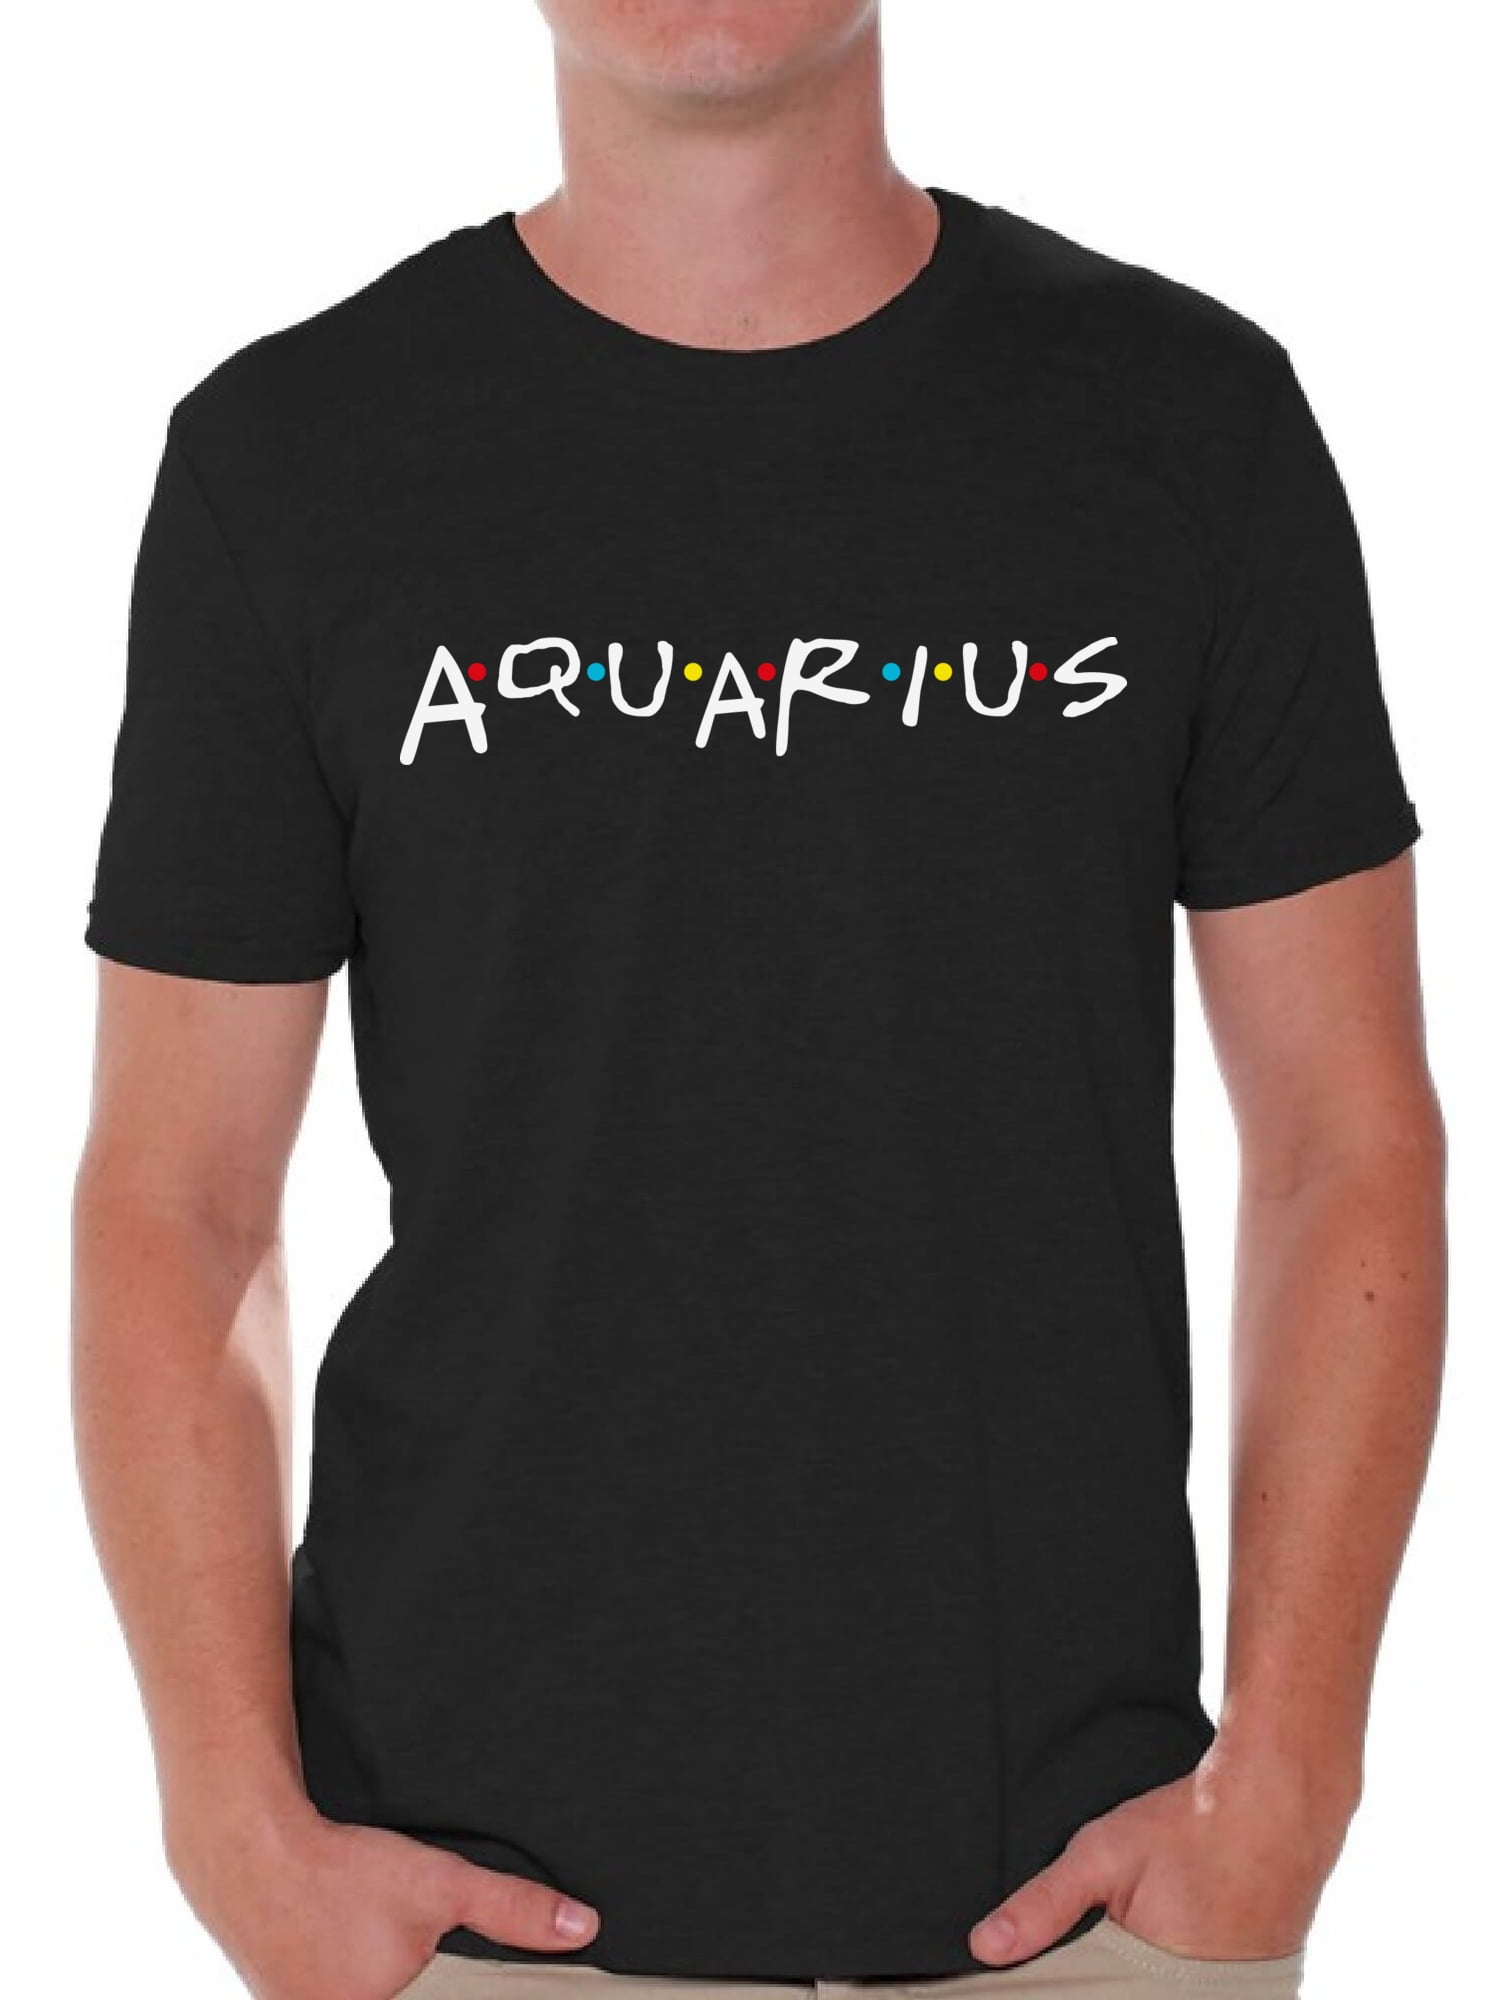 Aquarius Sweatshirt Aquarius Shirt Aquarius Birthday Gift| Aquarius Gifts Gifts for Aquarius |Zodiac Sign Gift Zodiac Sign Crewneck